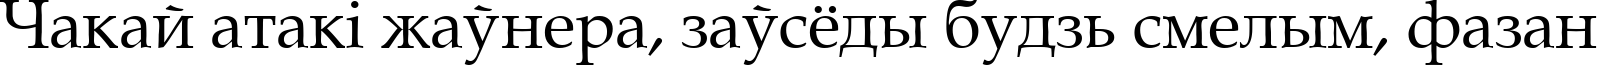 Пример написания шрифтом Gemerald текста на белорусском